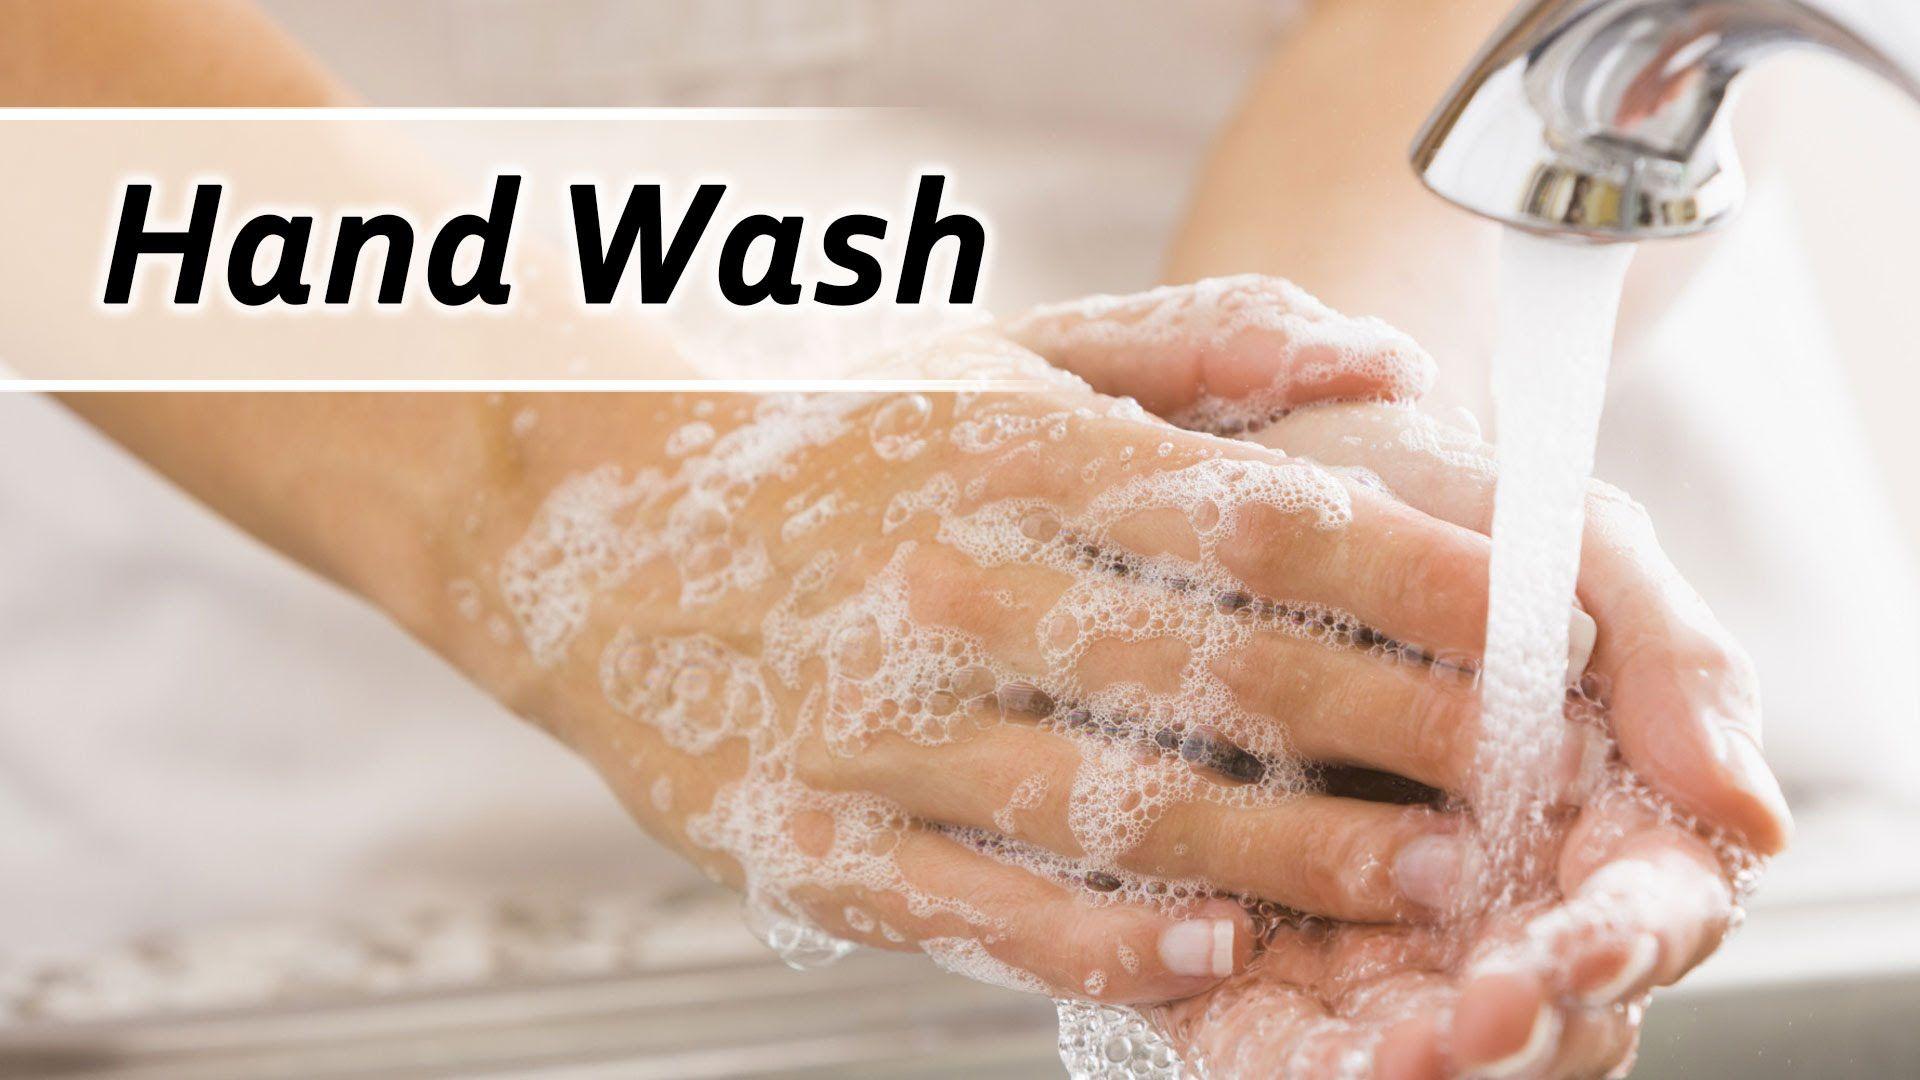 Hand Wash Image HD Hand 2017